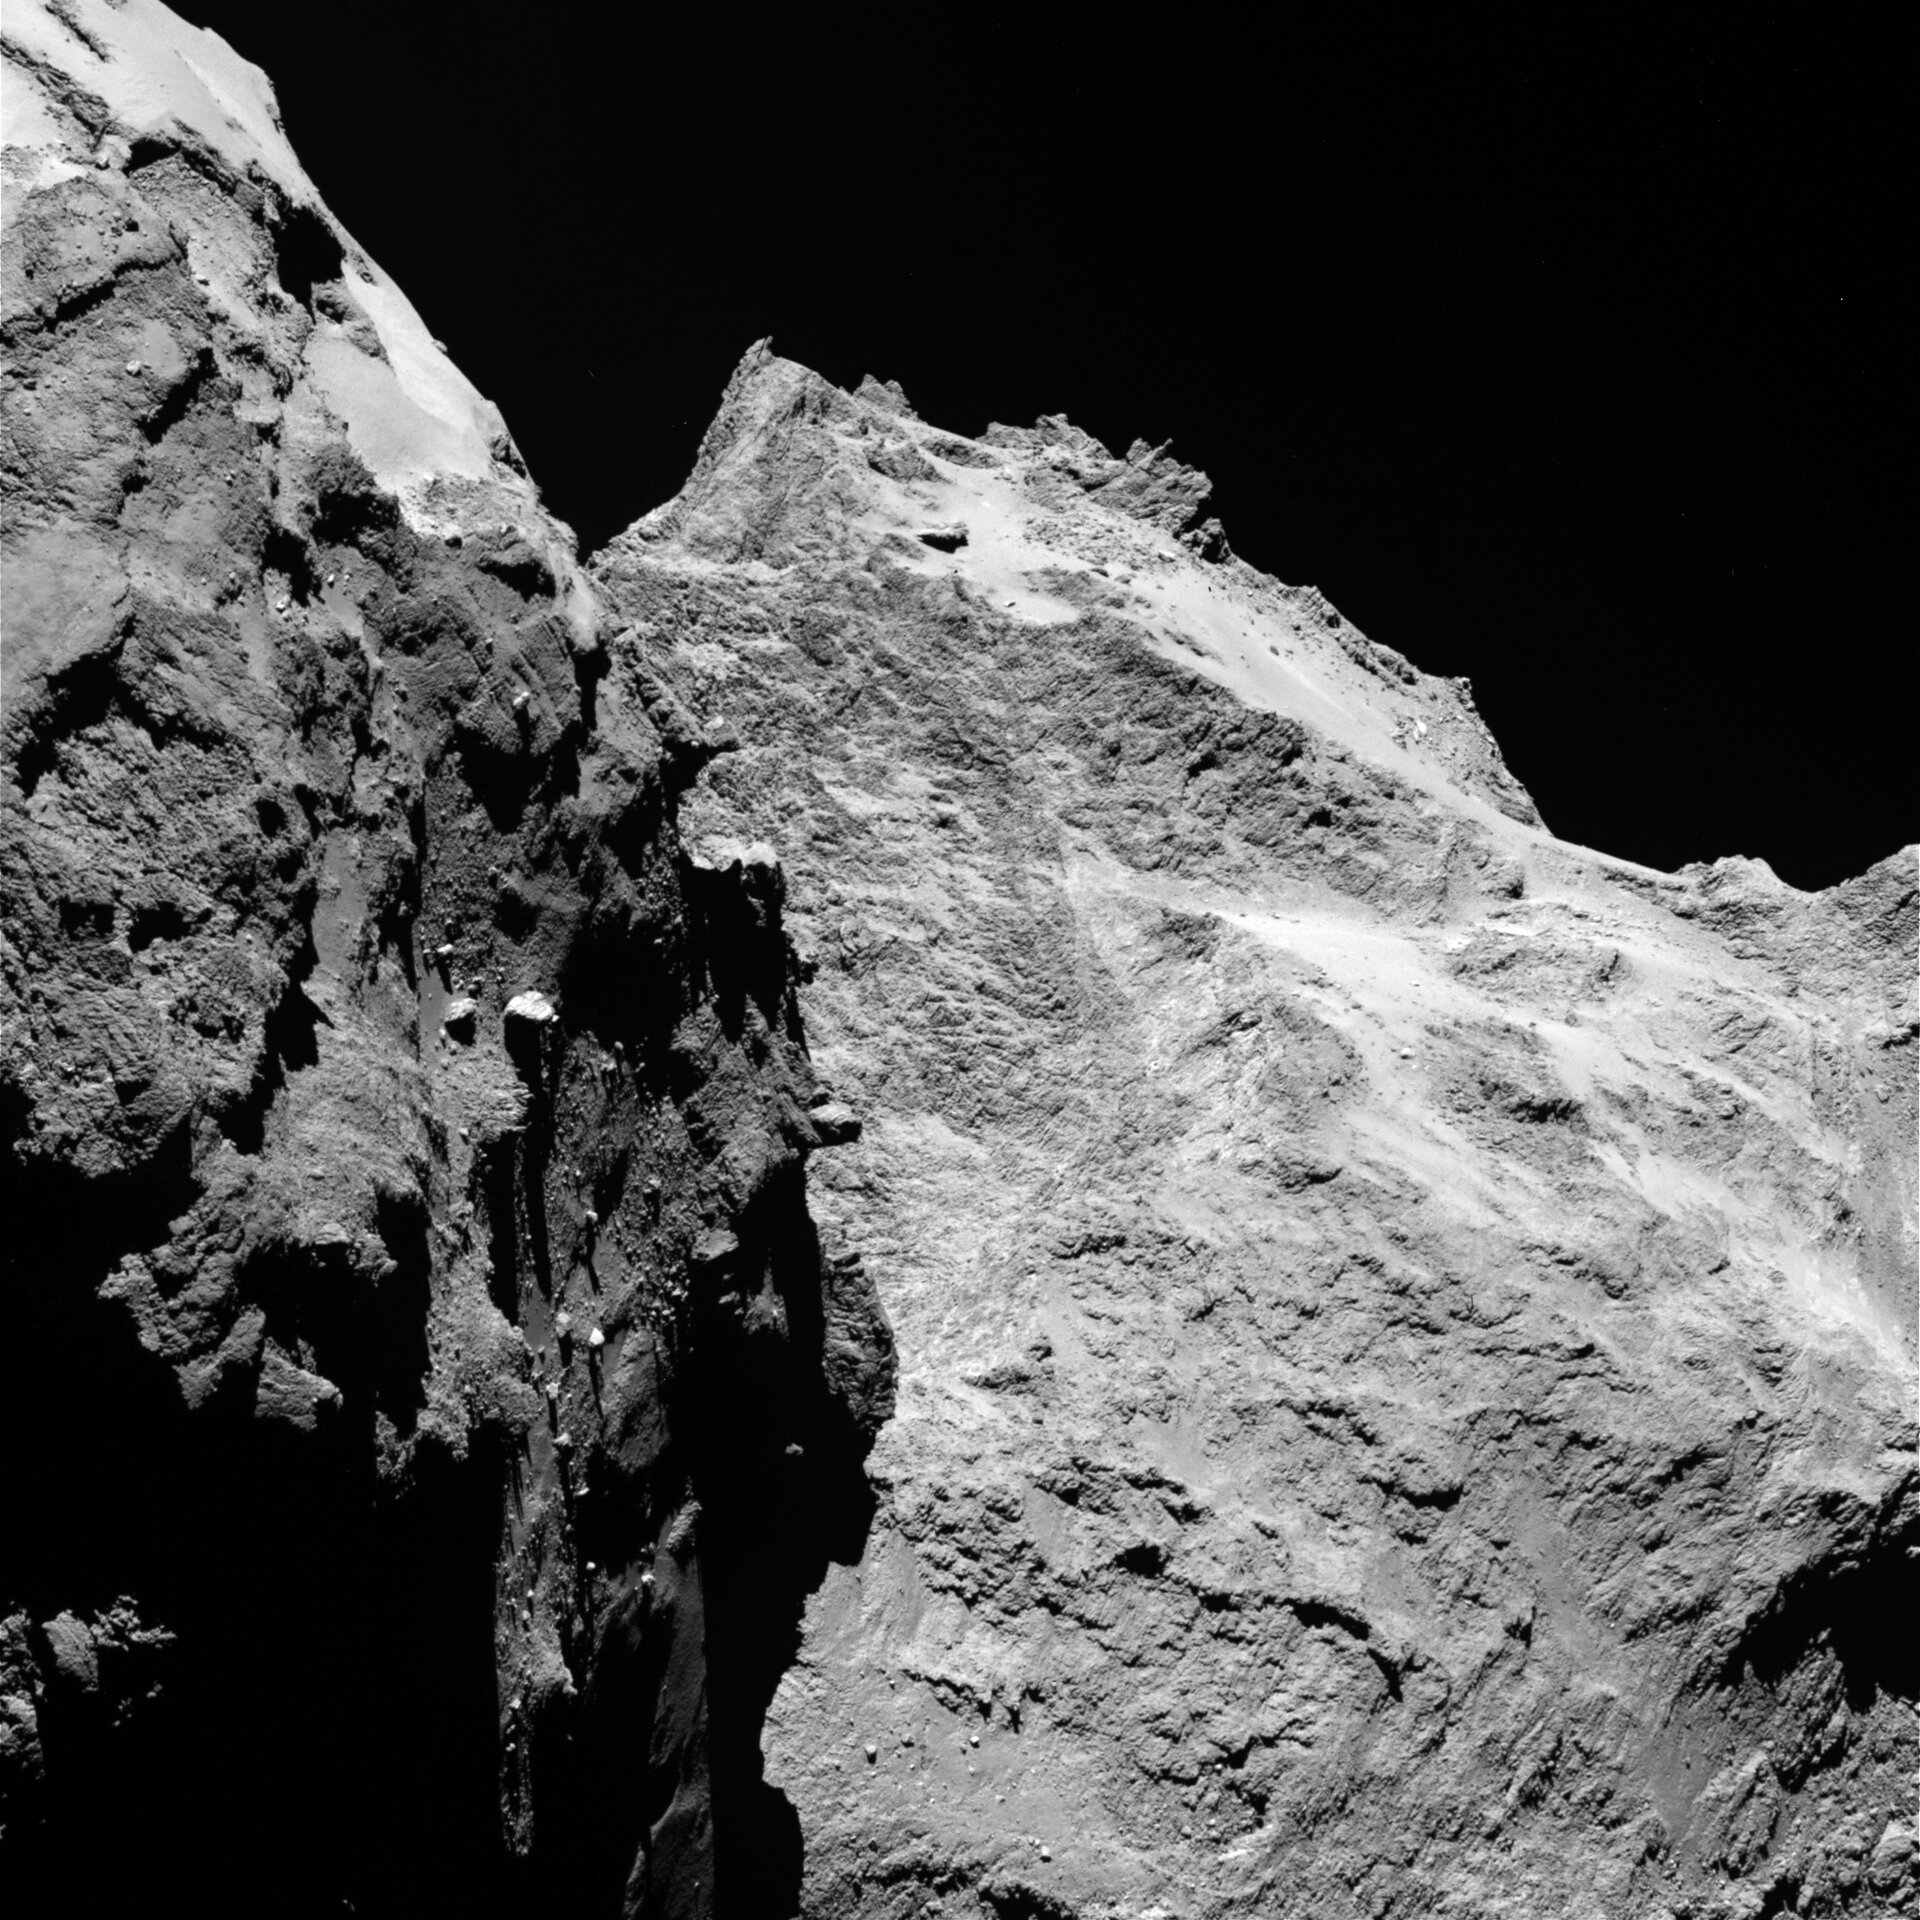 Comet on 5 September 2014